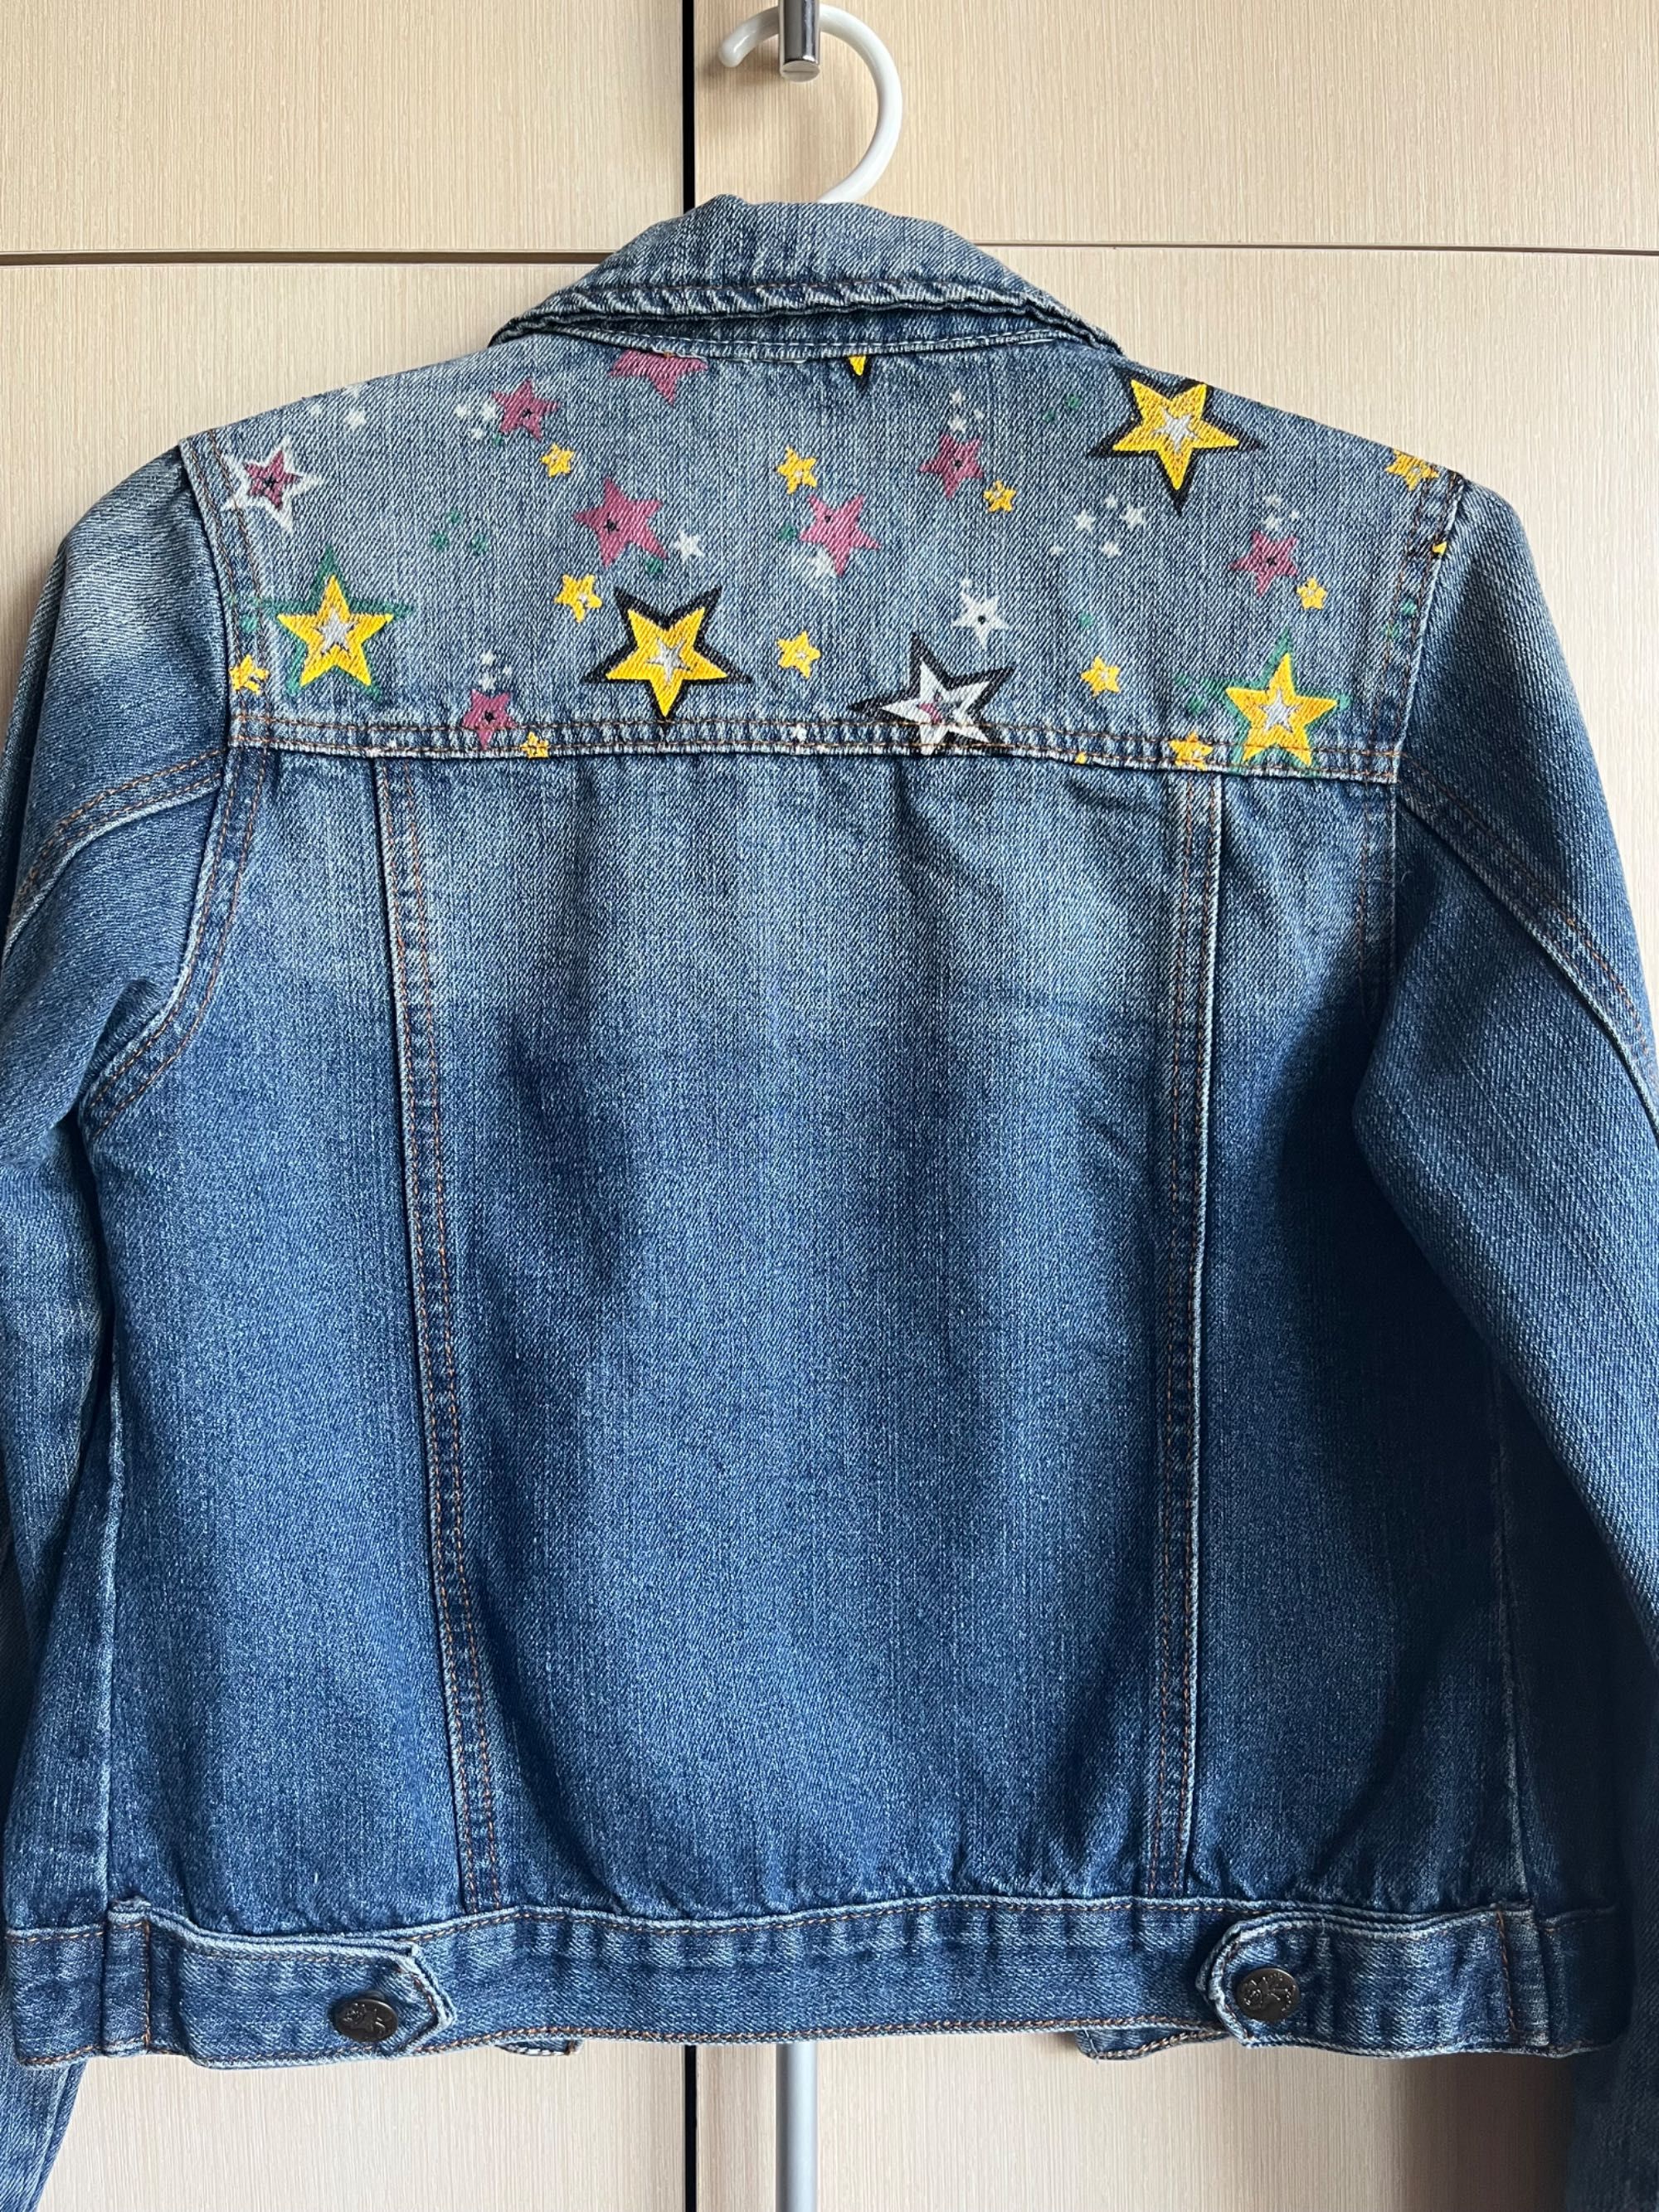 Джинсова куртка з принтом «зірки»